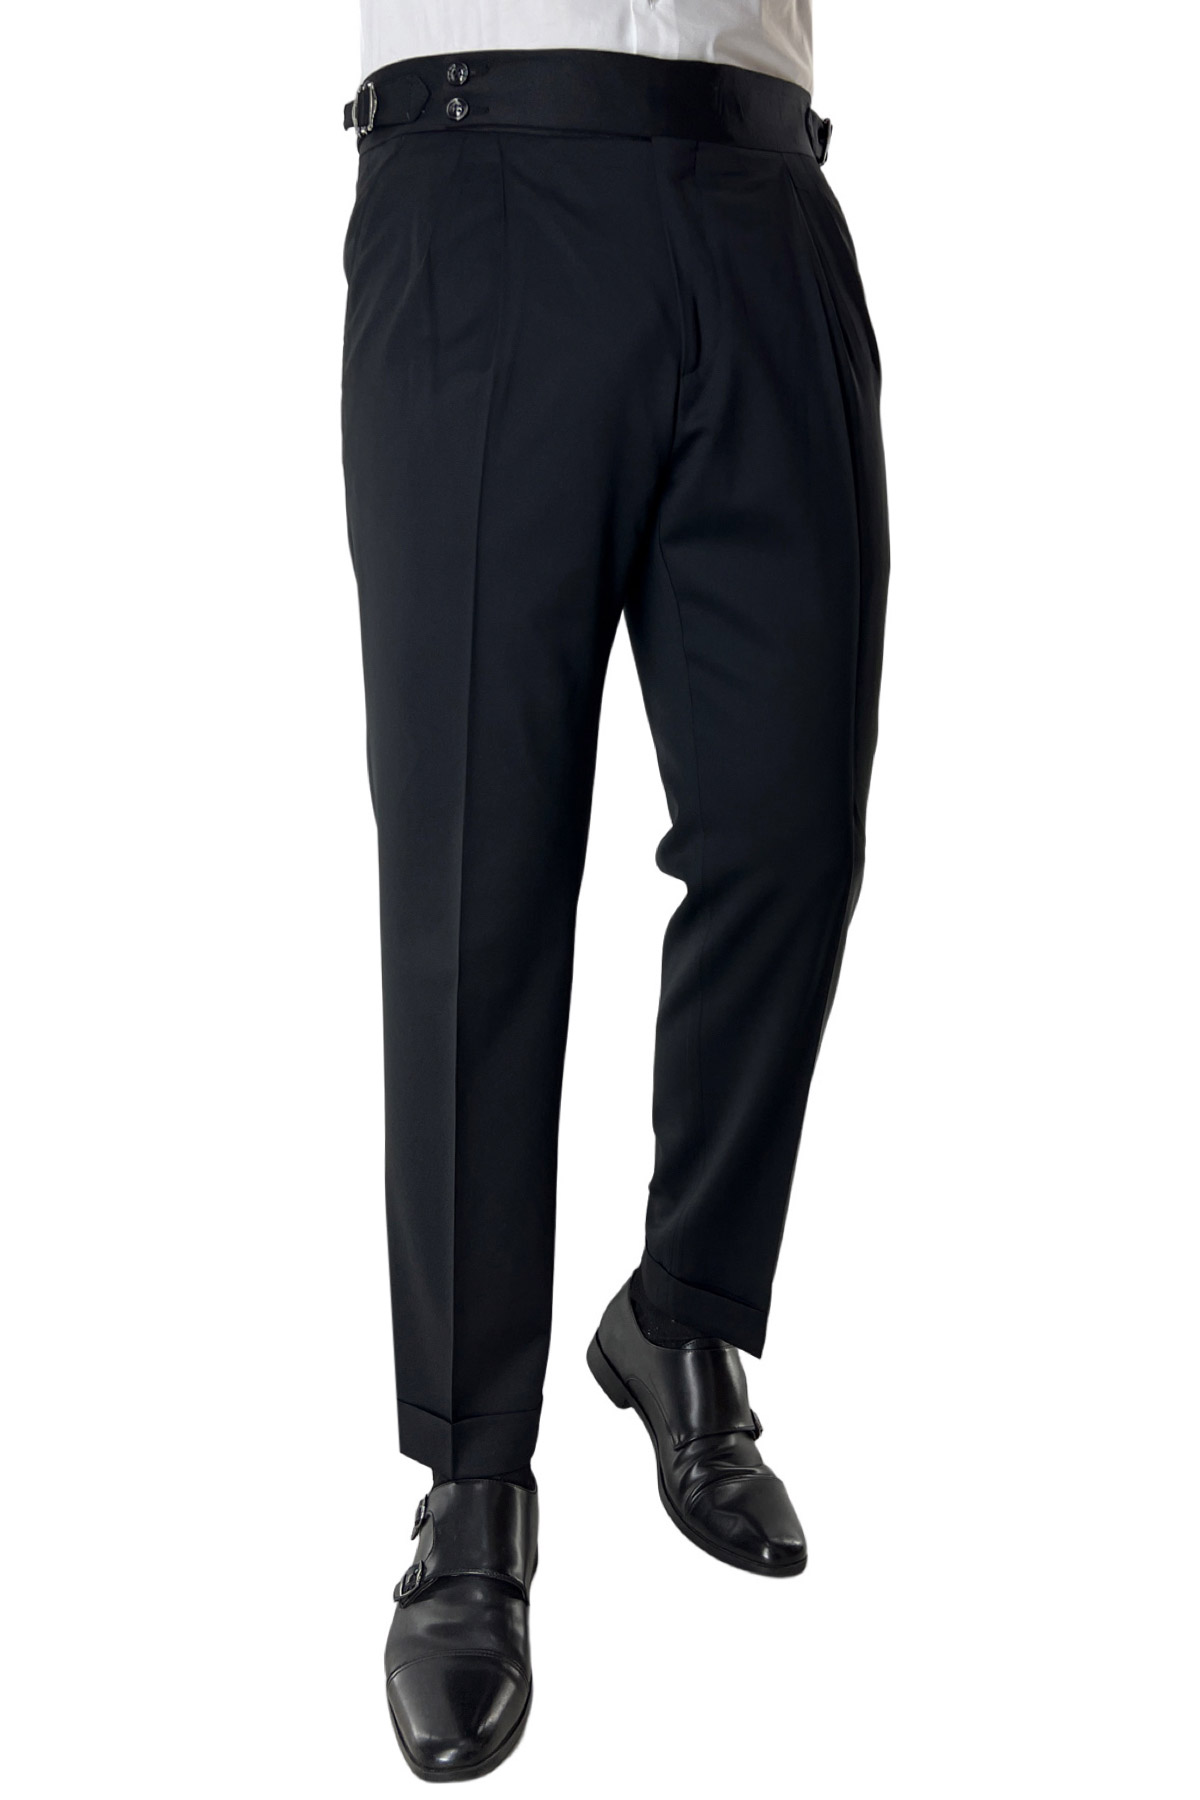 Pantalone uomo nero vita alta doppia pinces in fresco lana super 130's Vitale Barberis Canonico